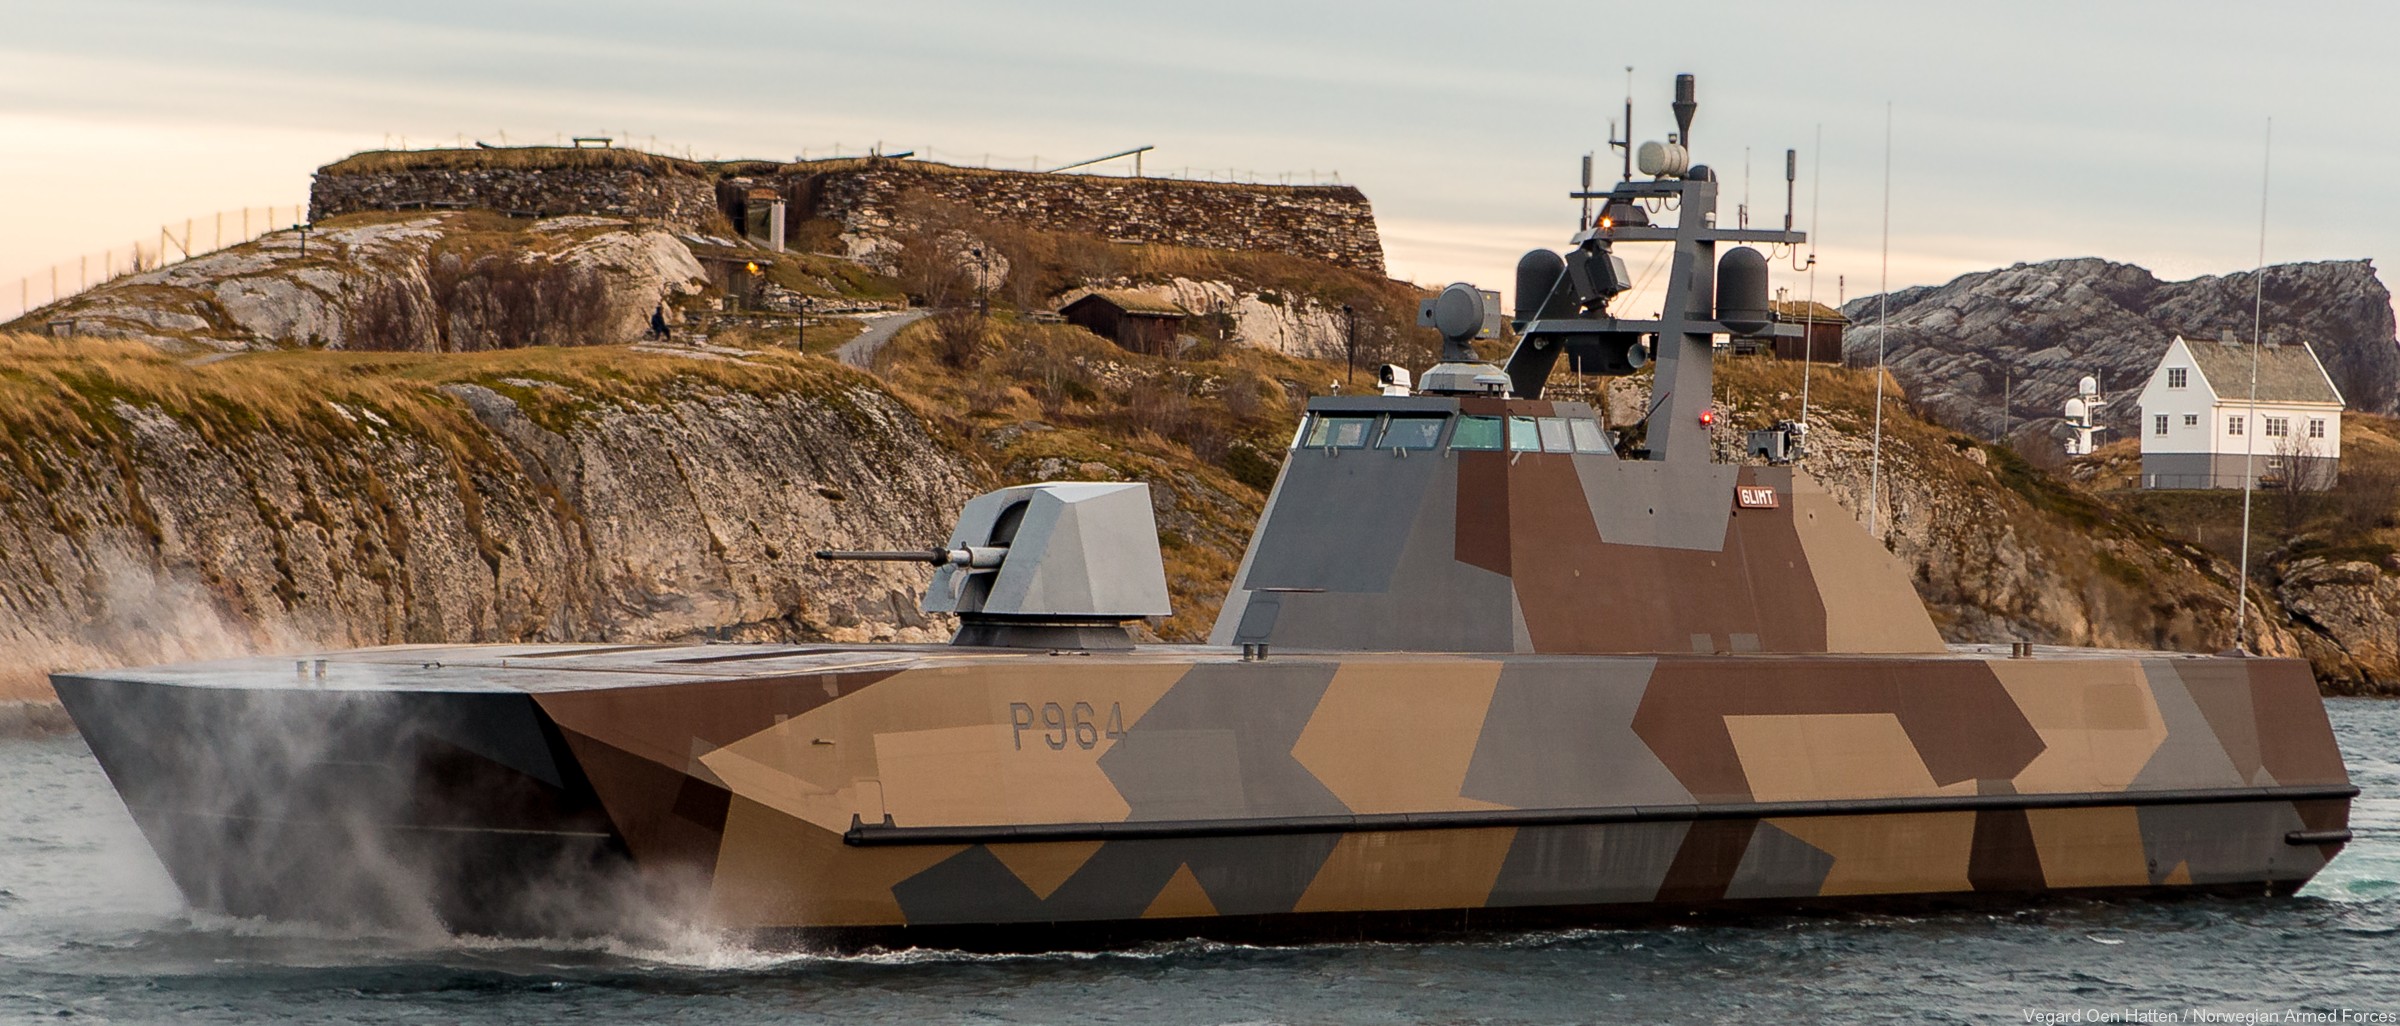 p-964 glimt knm hnoms skjold class corvette royal norwegian navy sjoforsvaret 03